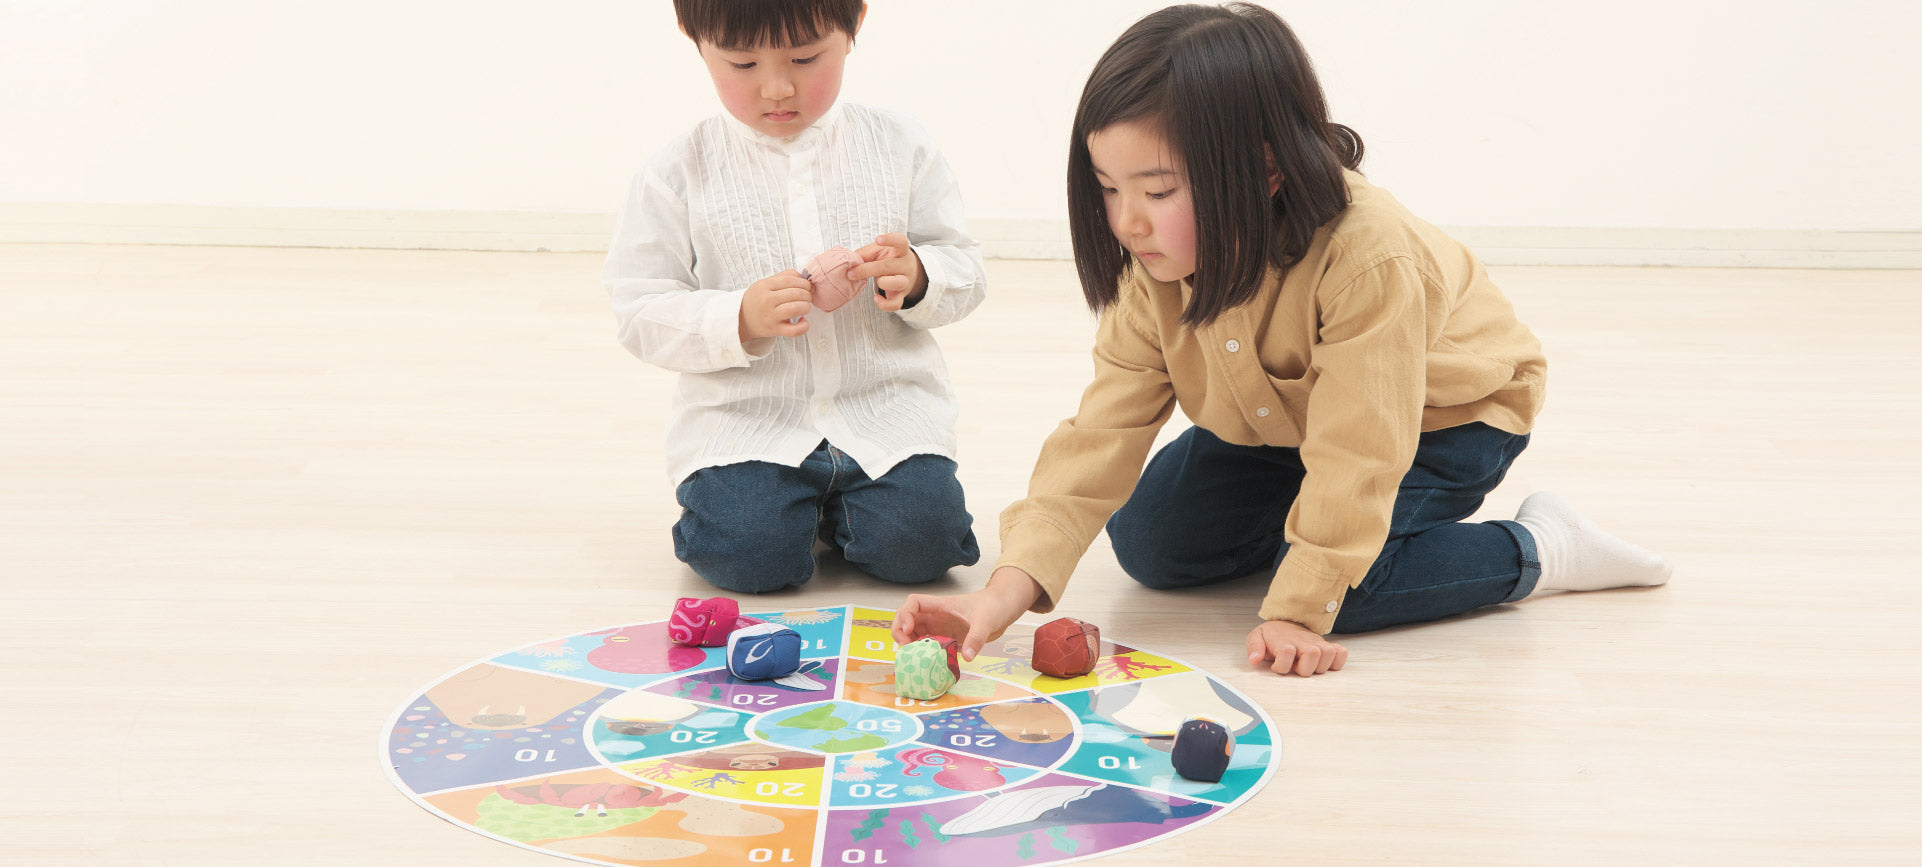 ファミリーおてだまSEA WORLDで遊ぶ2人の子供